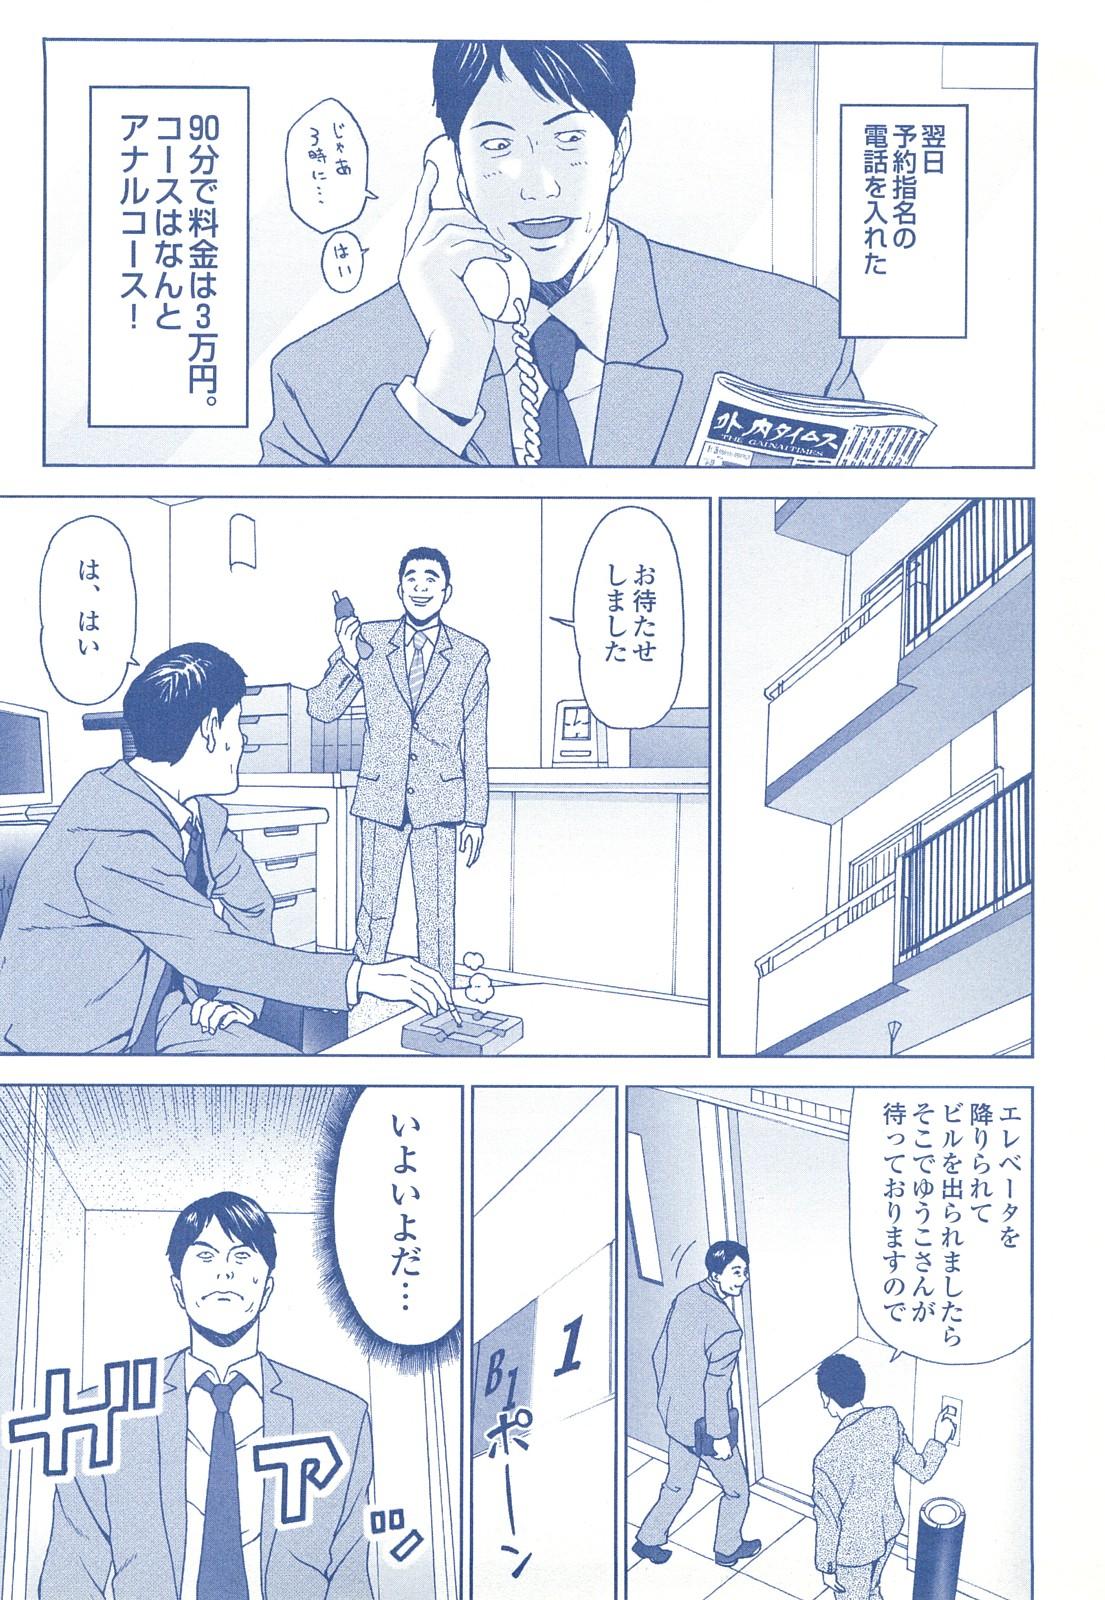 コミック裏モノJAPAN Vol.18 今井のりたつスペシャル号 201